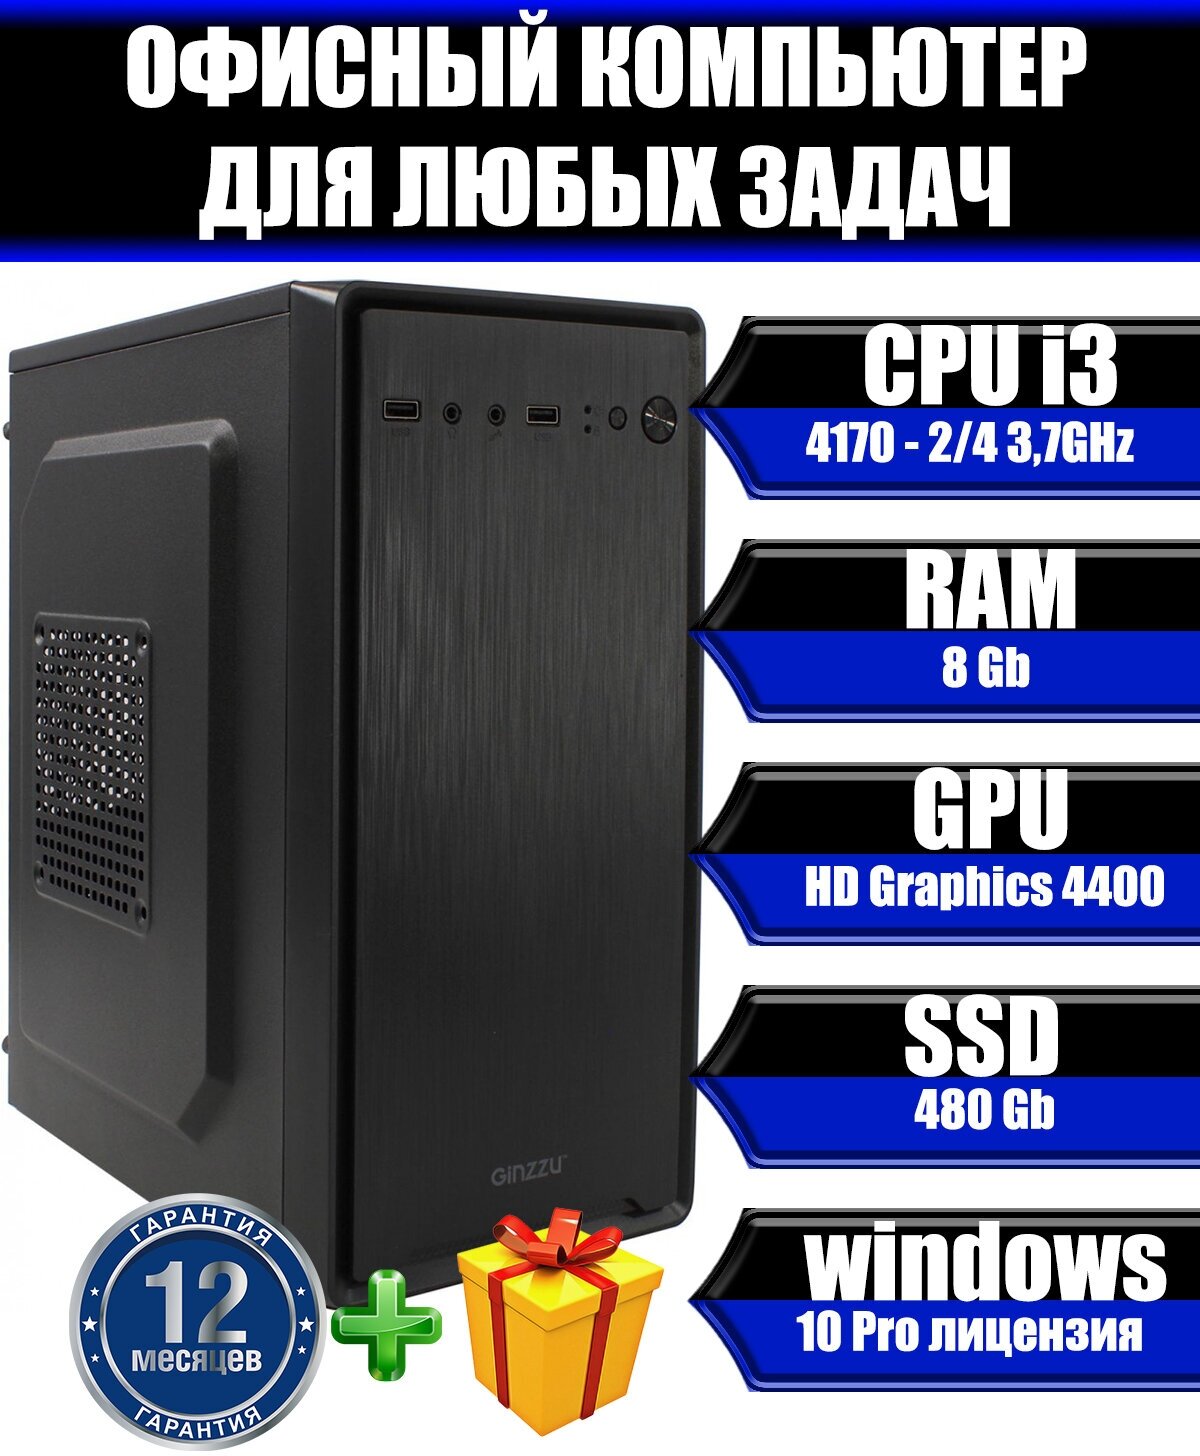 Системный блок Electronics Store Офисный Компьютер (Intel Core i3-4170 (3.7 ГГц), RAM 8 ГБ, SSD 480 ГБ, Intel HD Graphics, Windows 10 Pro), черный